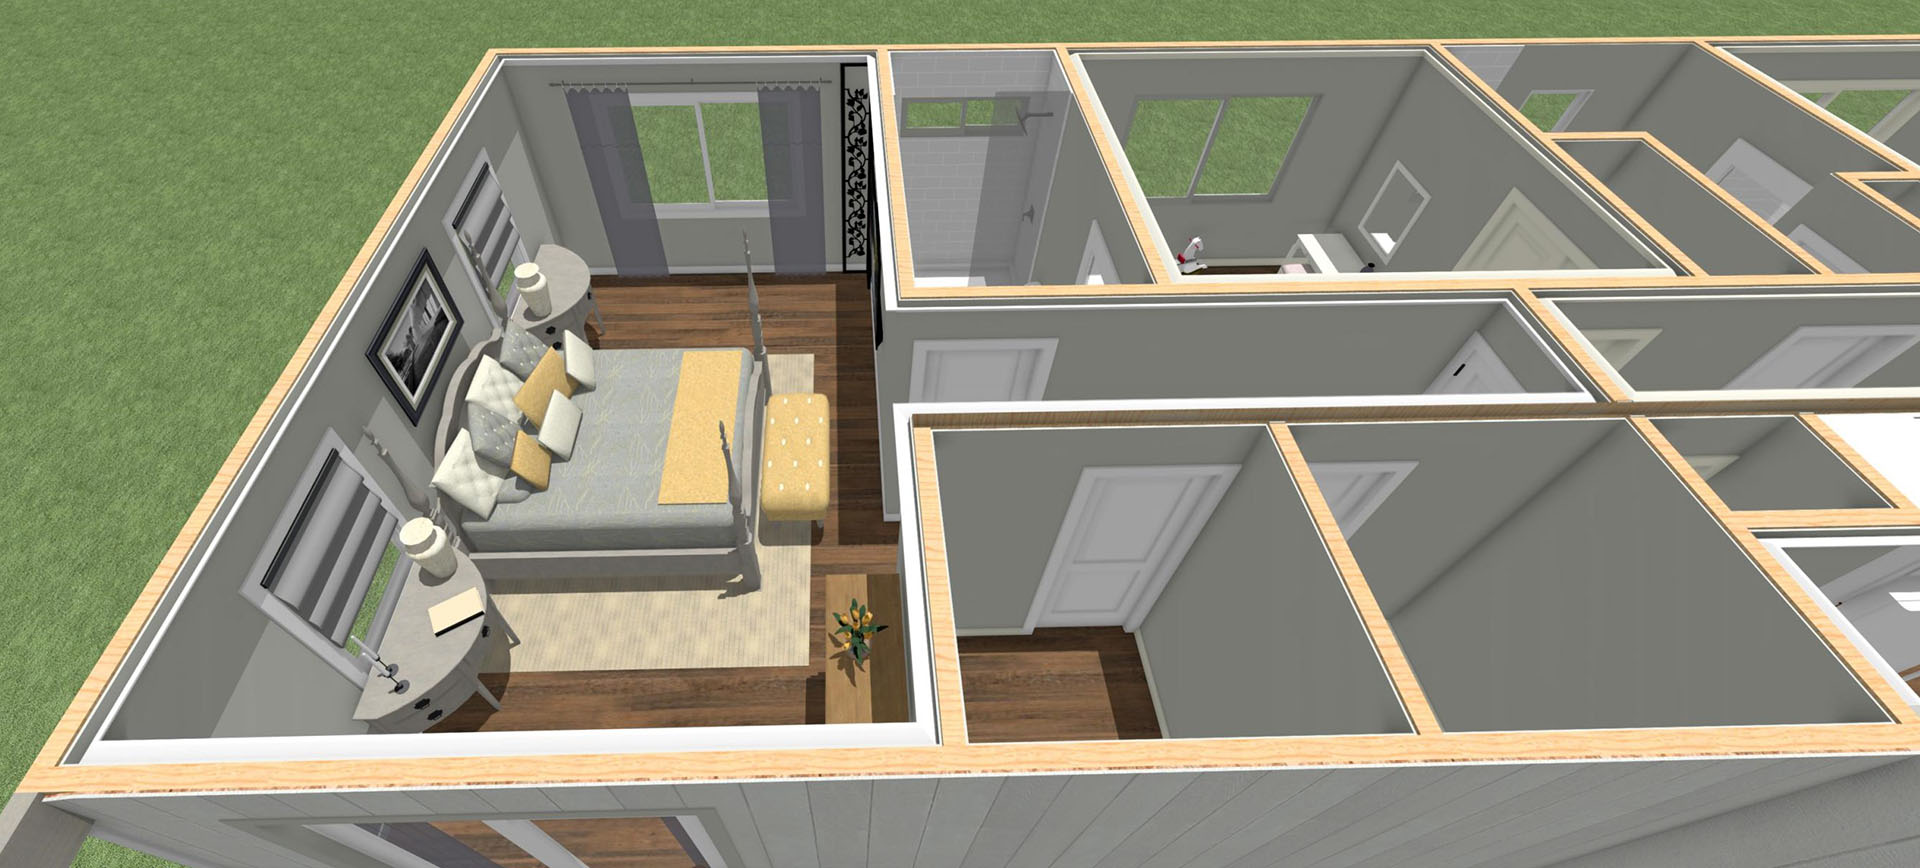 Haouli Floor plan overview of master bedroom